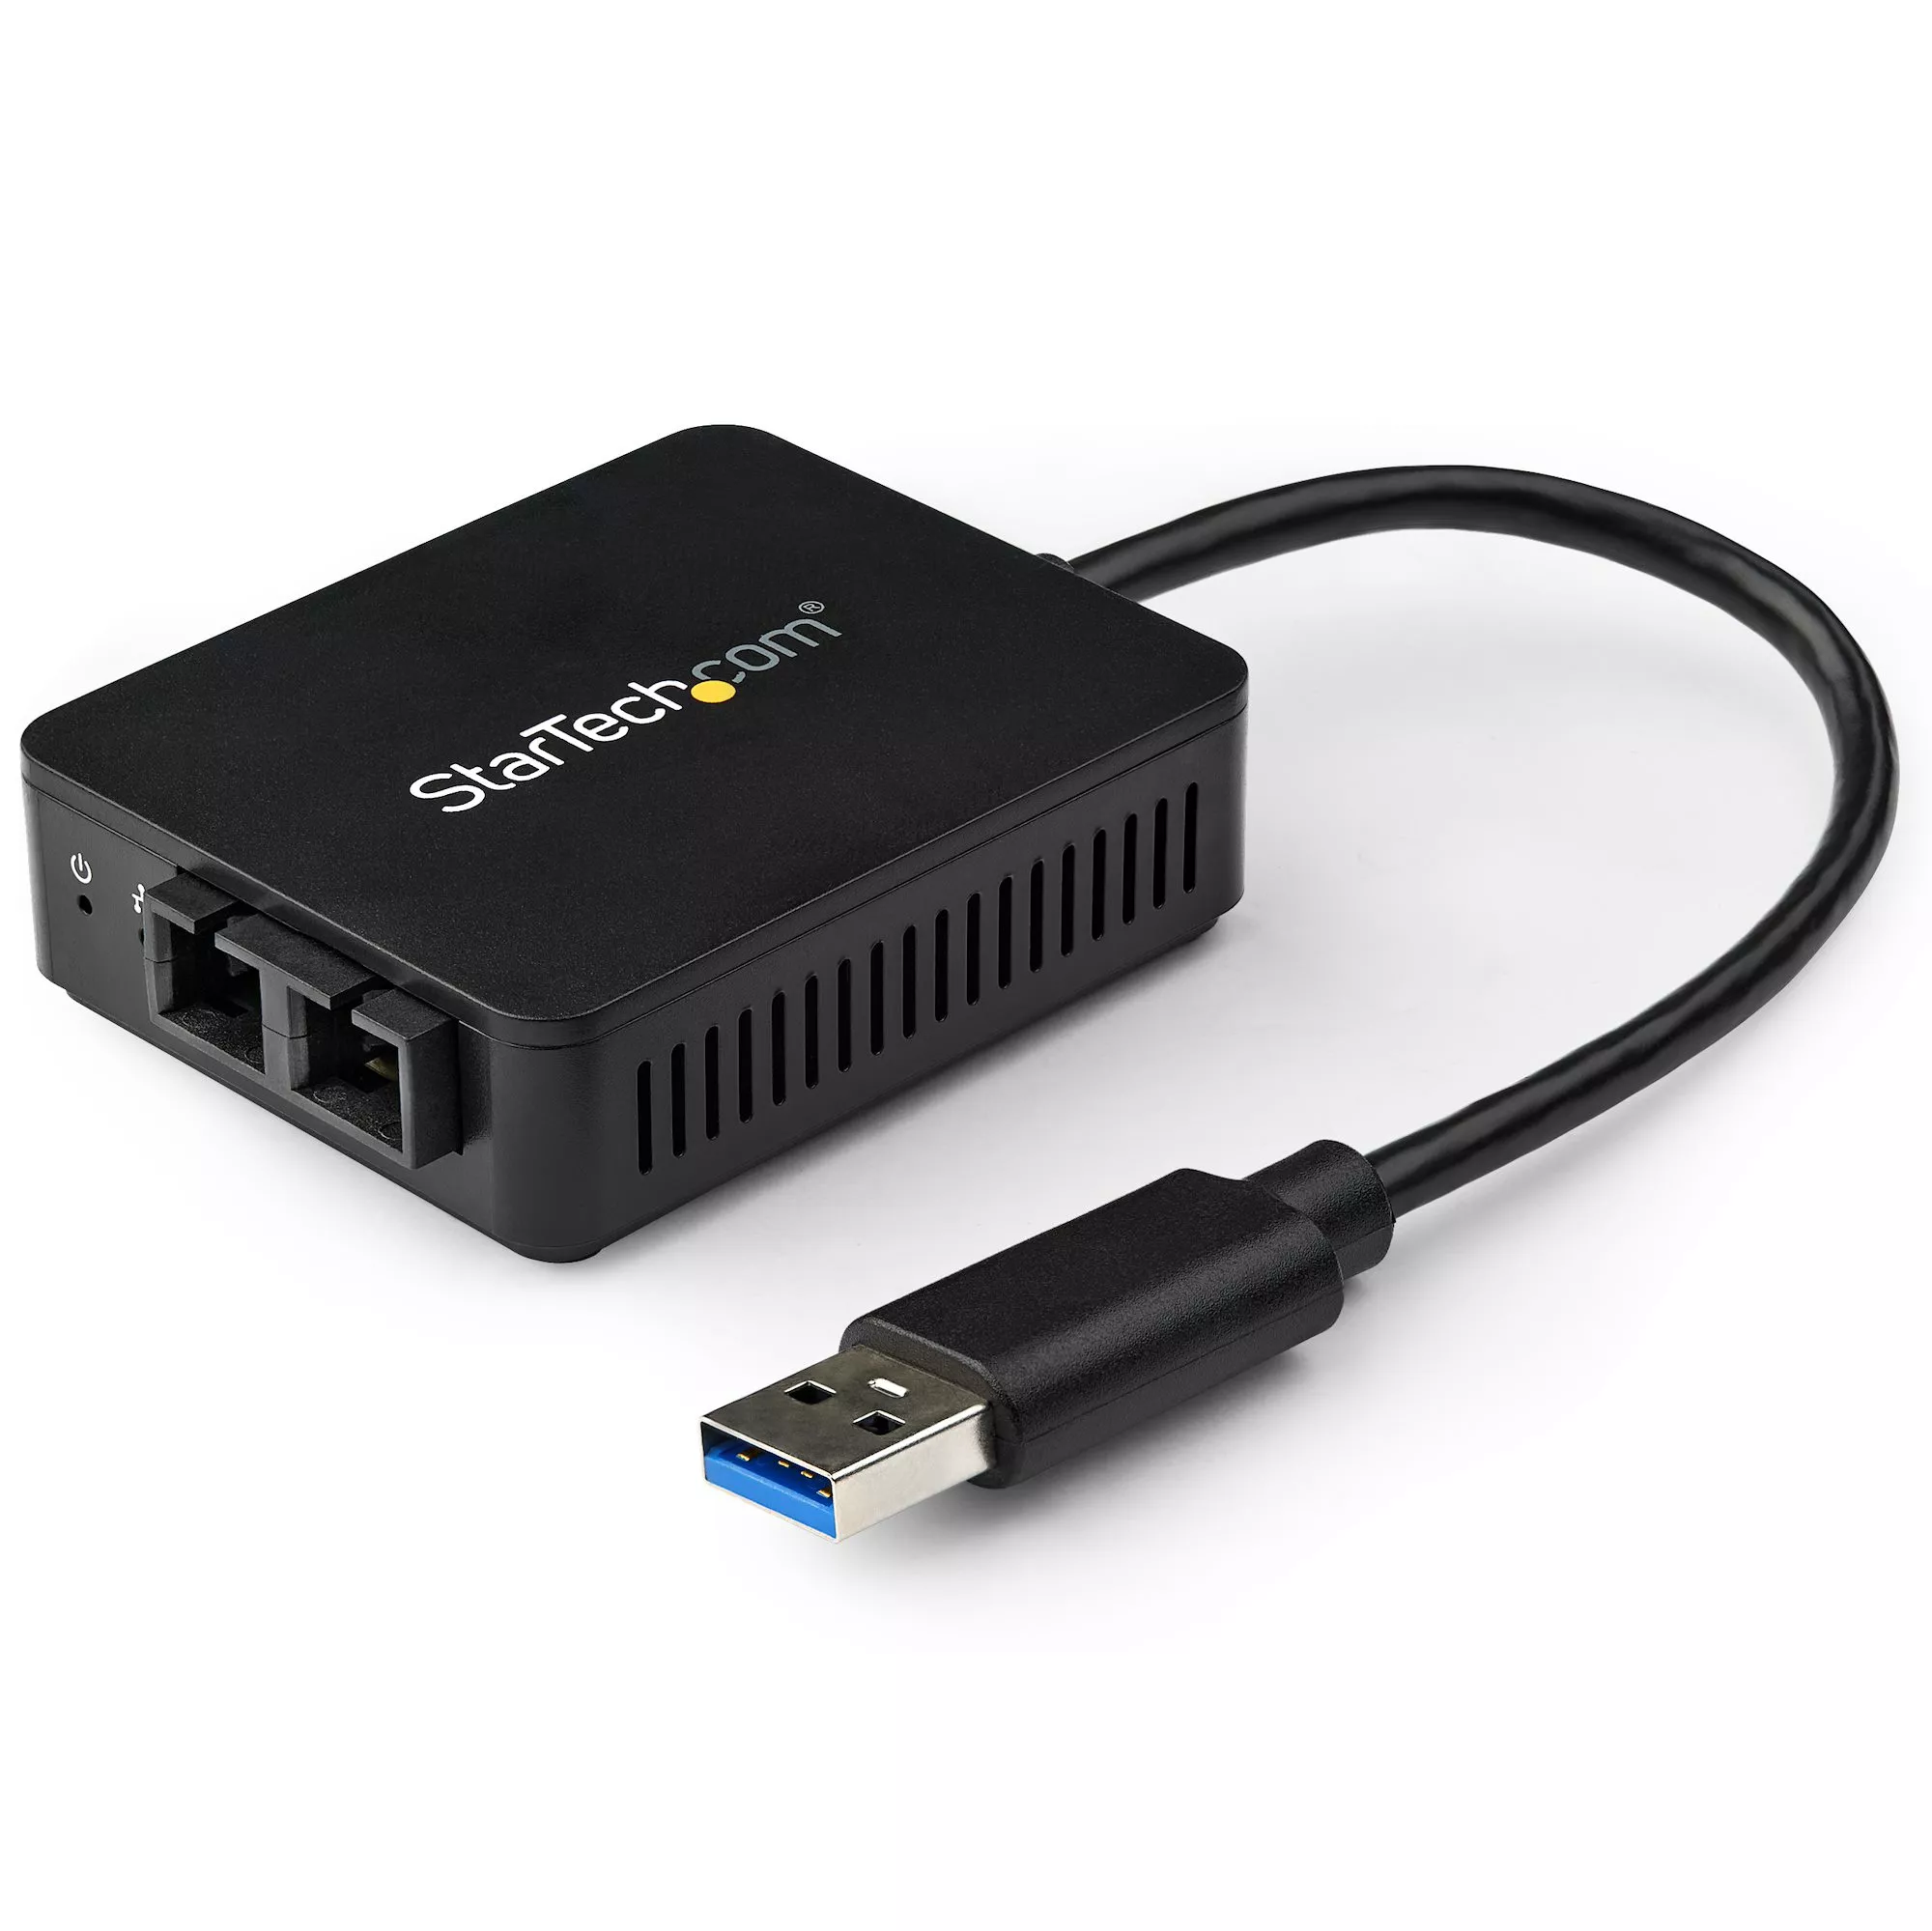 Achat StarTech.com Adaptateur réseau USB 3.0 vers fibre optique au meilleur prix